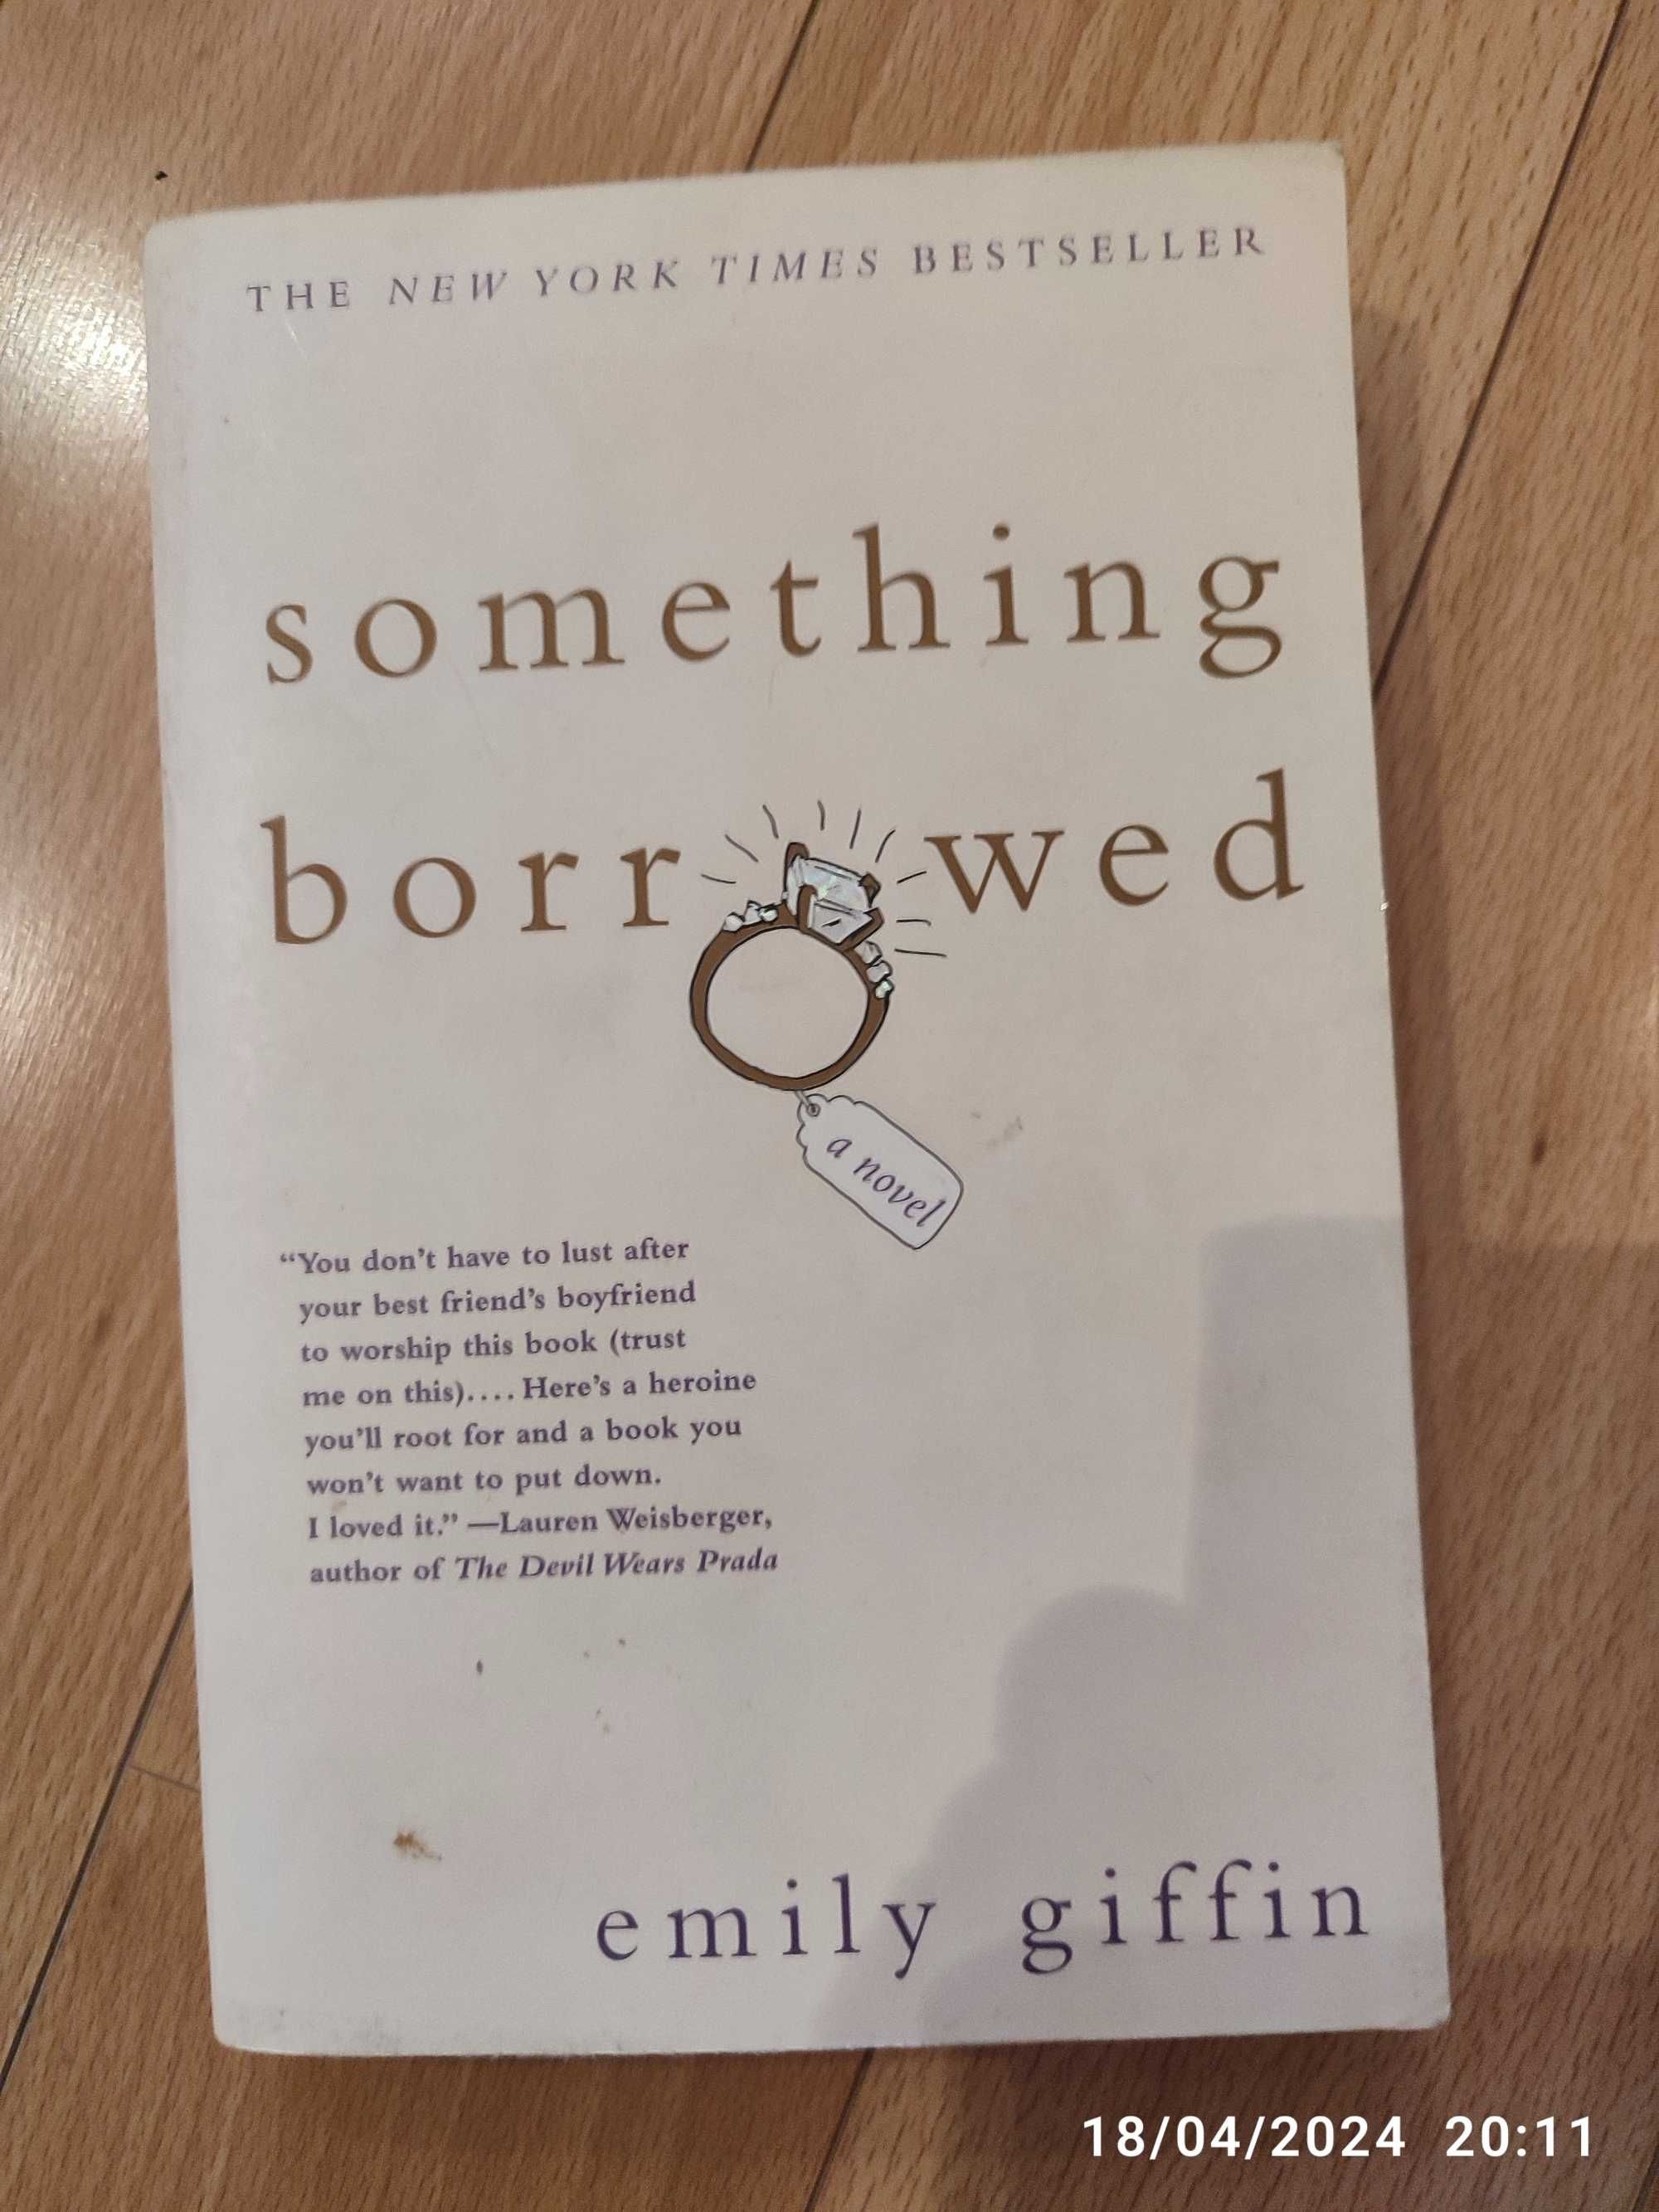 Livros Emily giffin